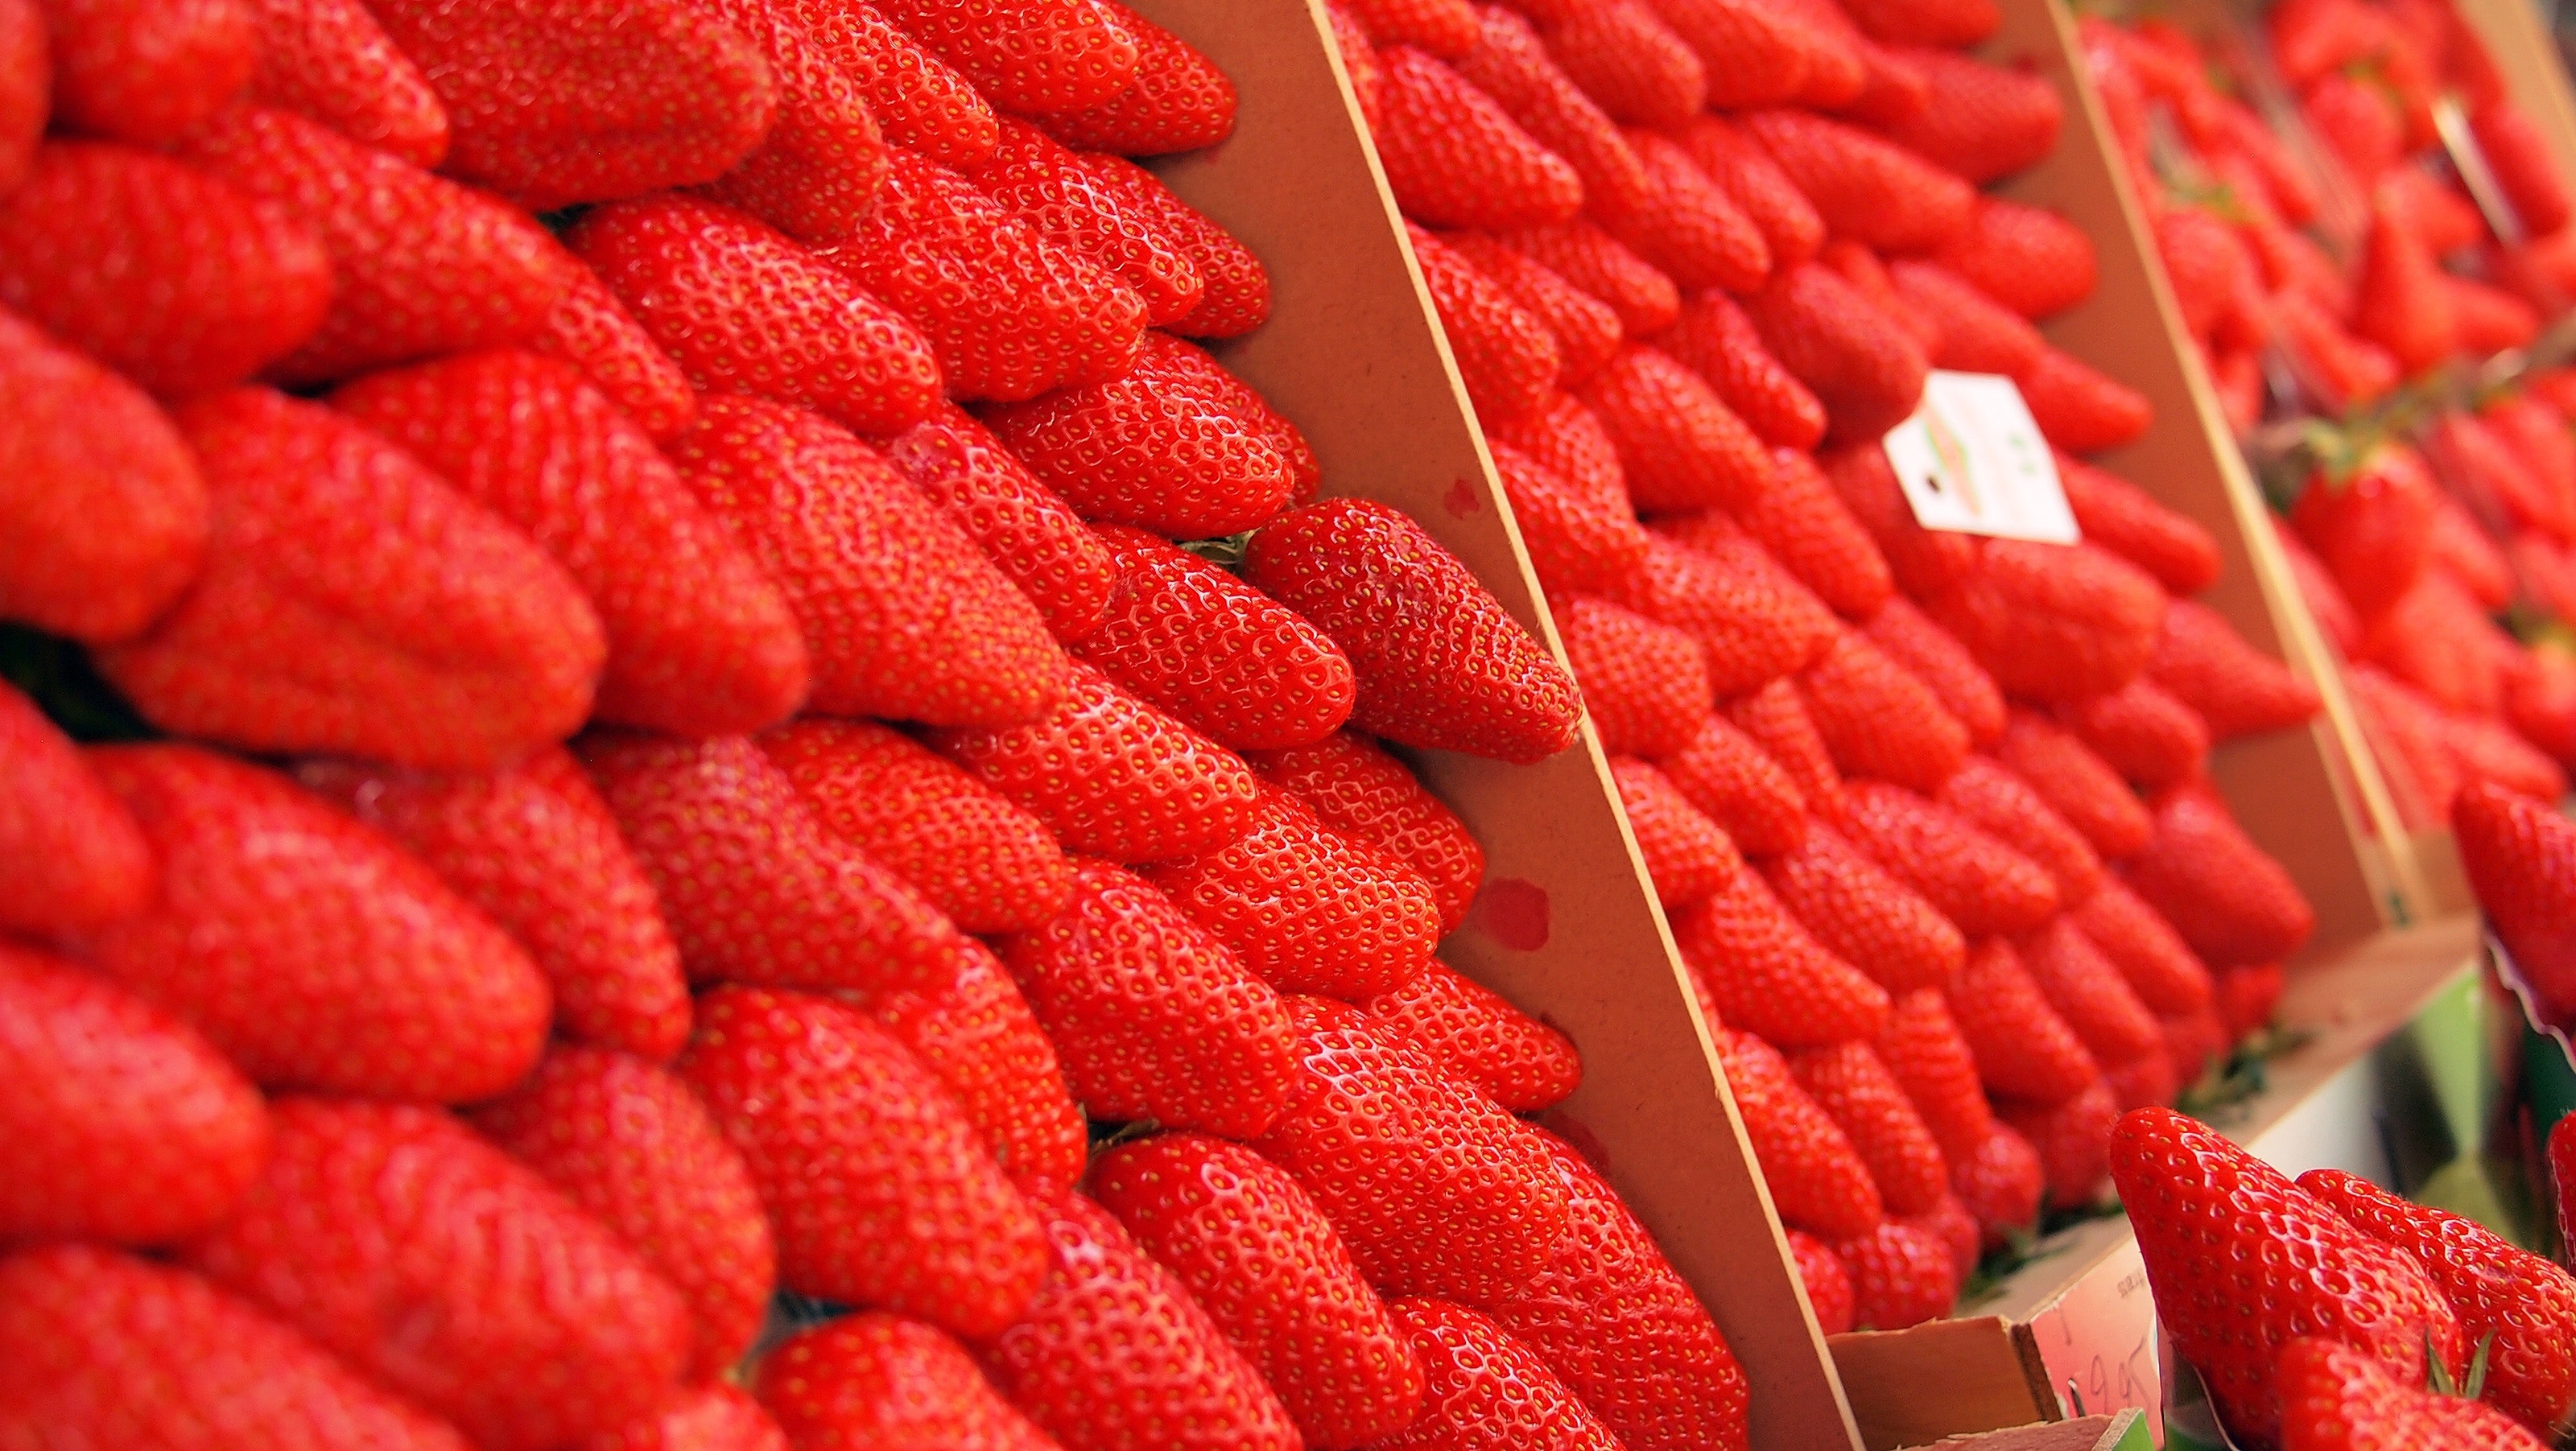 Strawberry fruit photo